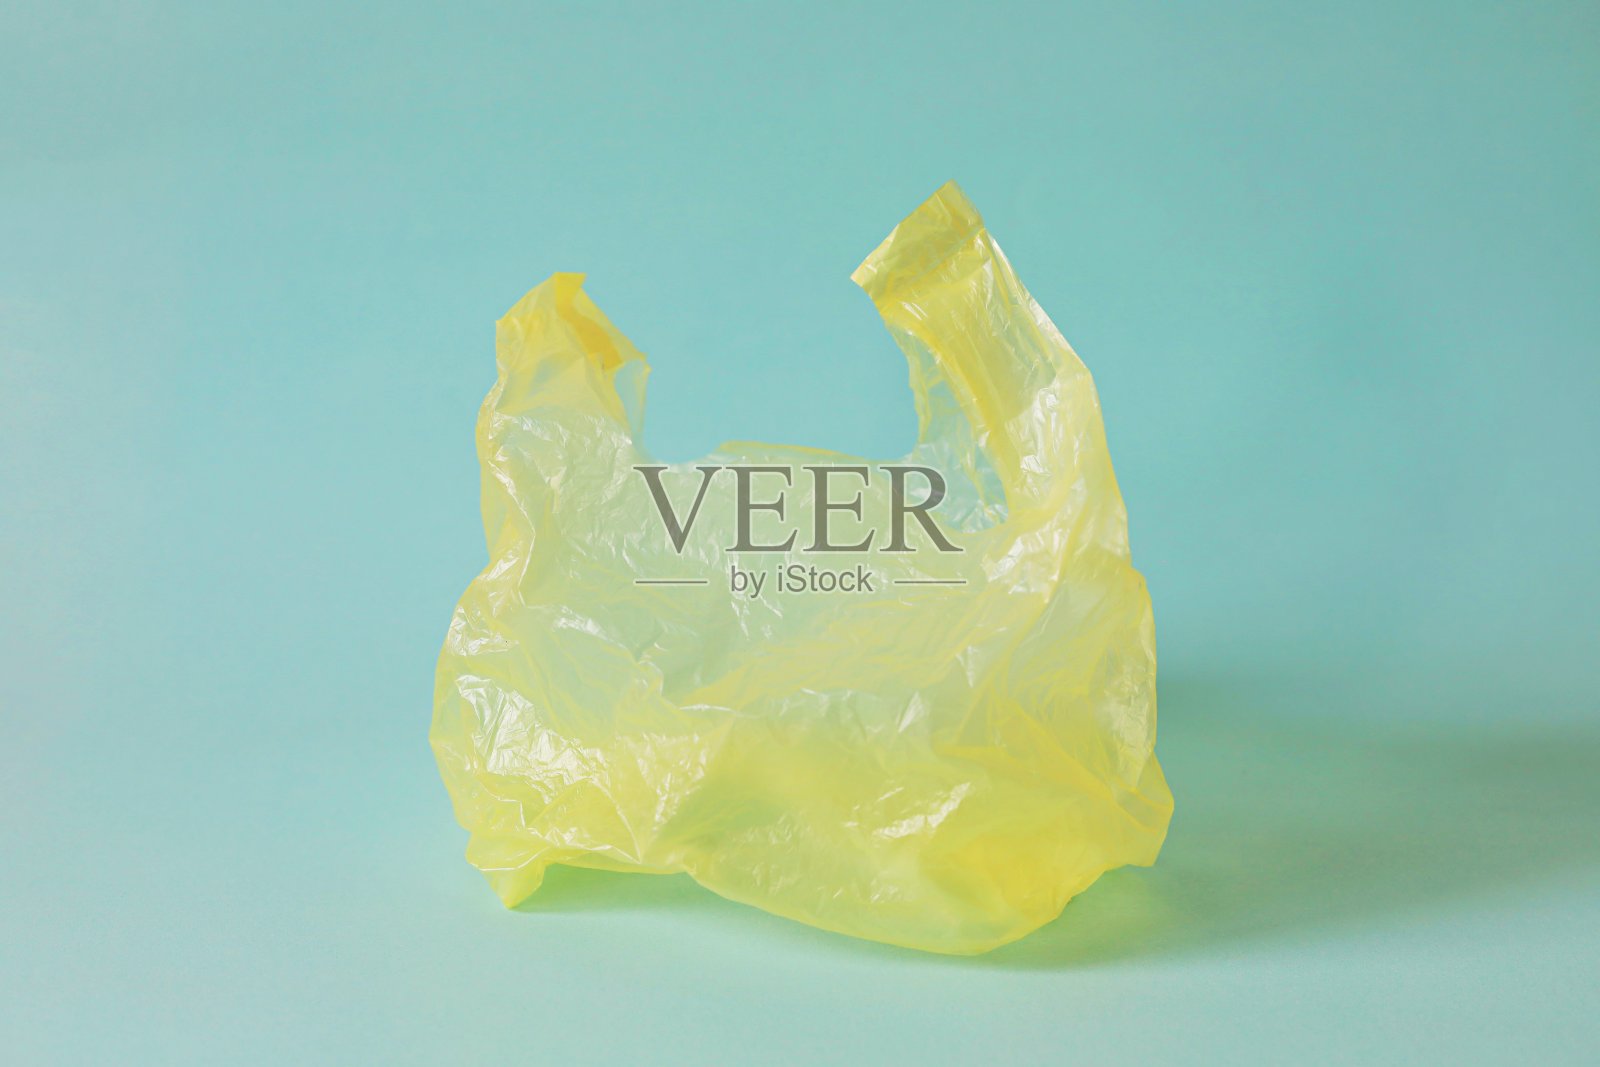 空的黄色塑胶袋与浅蓝色背景的废物回收概念照片摄影图片